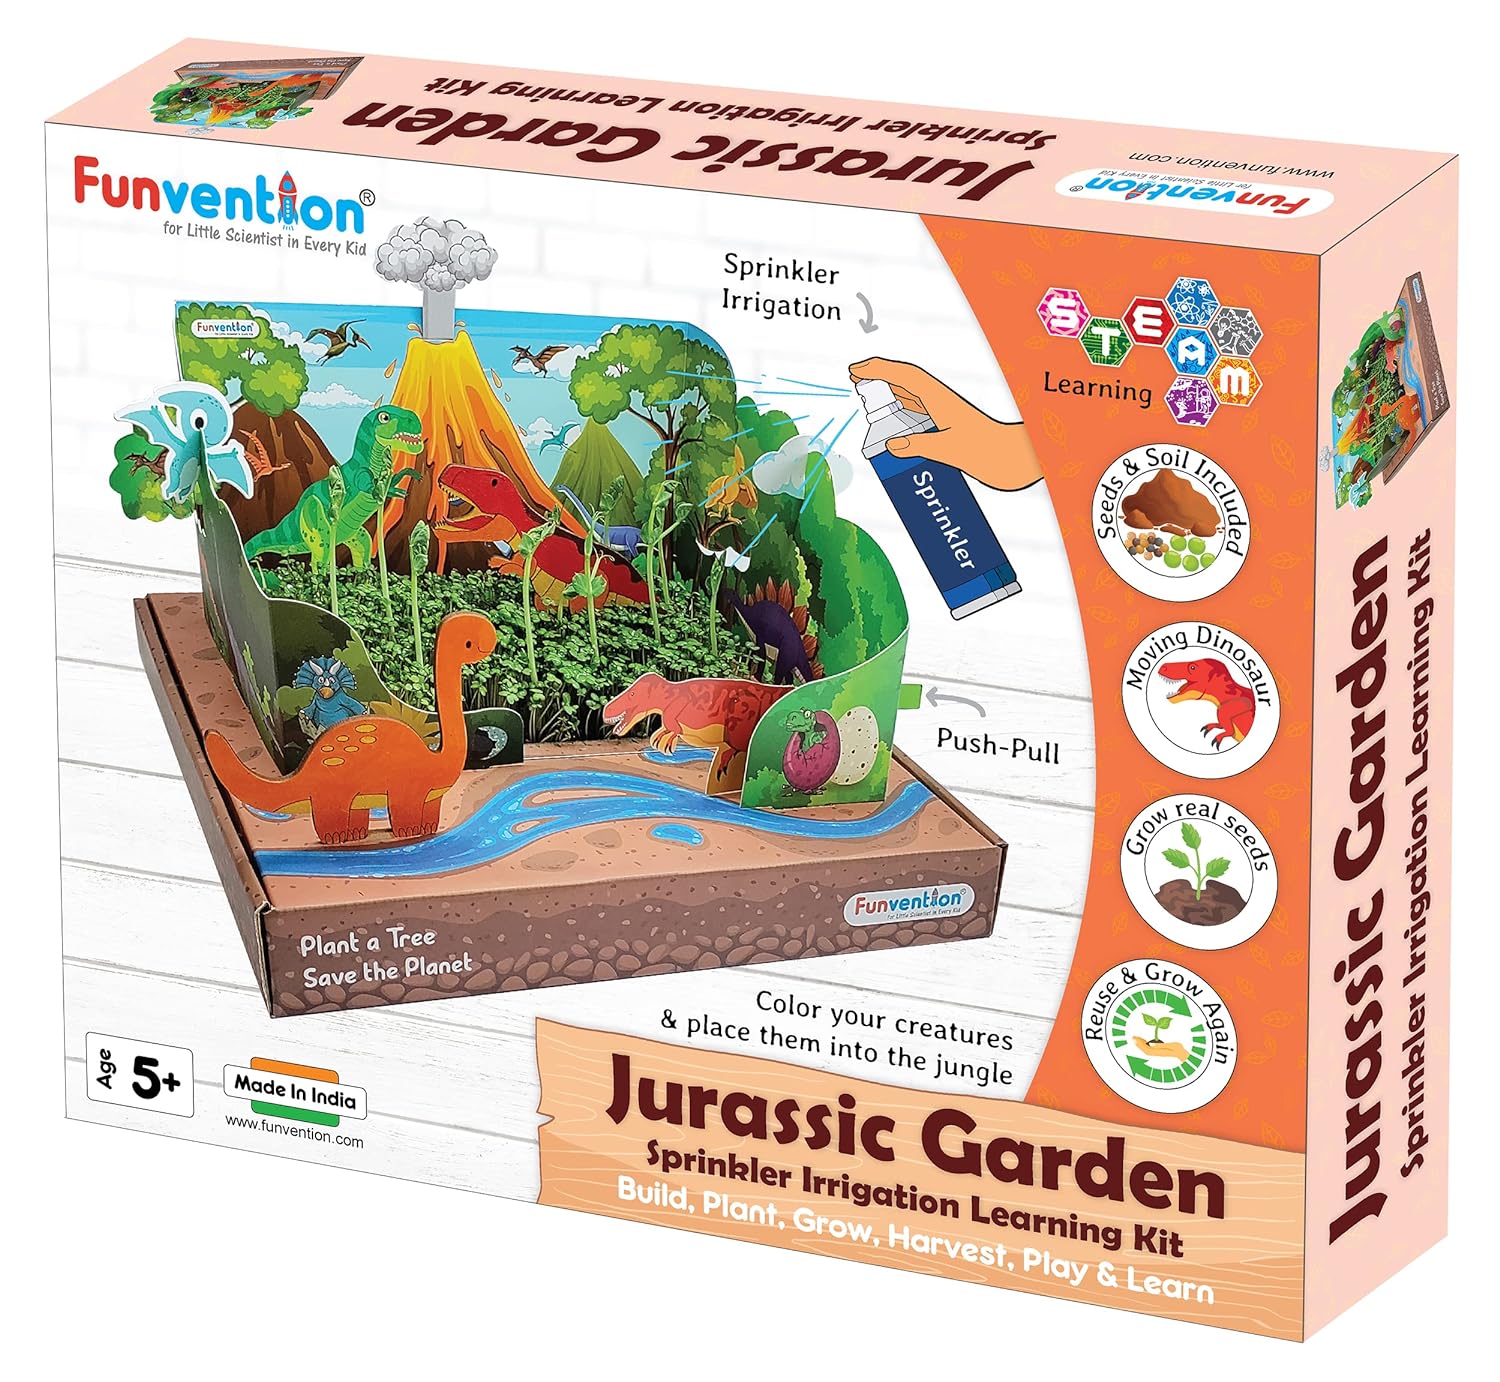 Funvention Jurassic Garden Sprinkler Irrigation DIY STEM Learning Kit for Kids